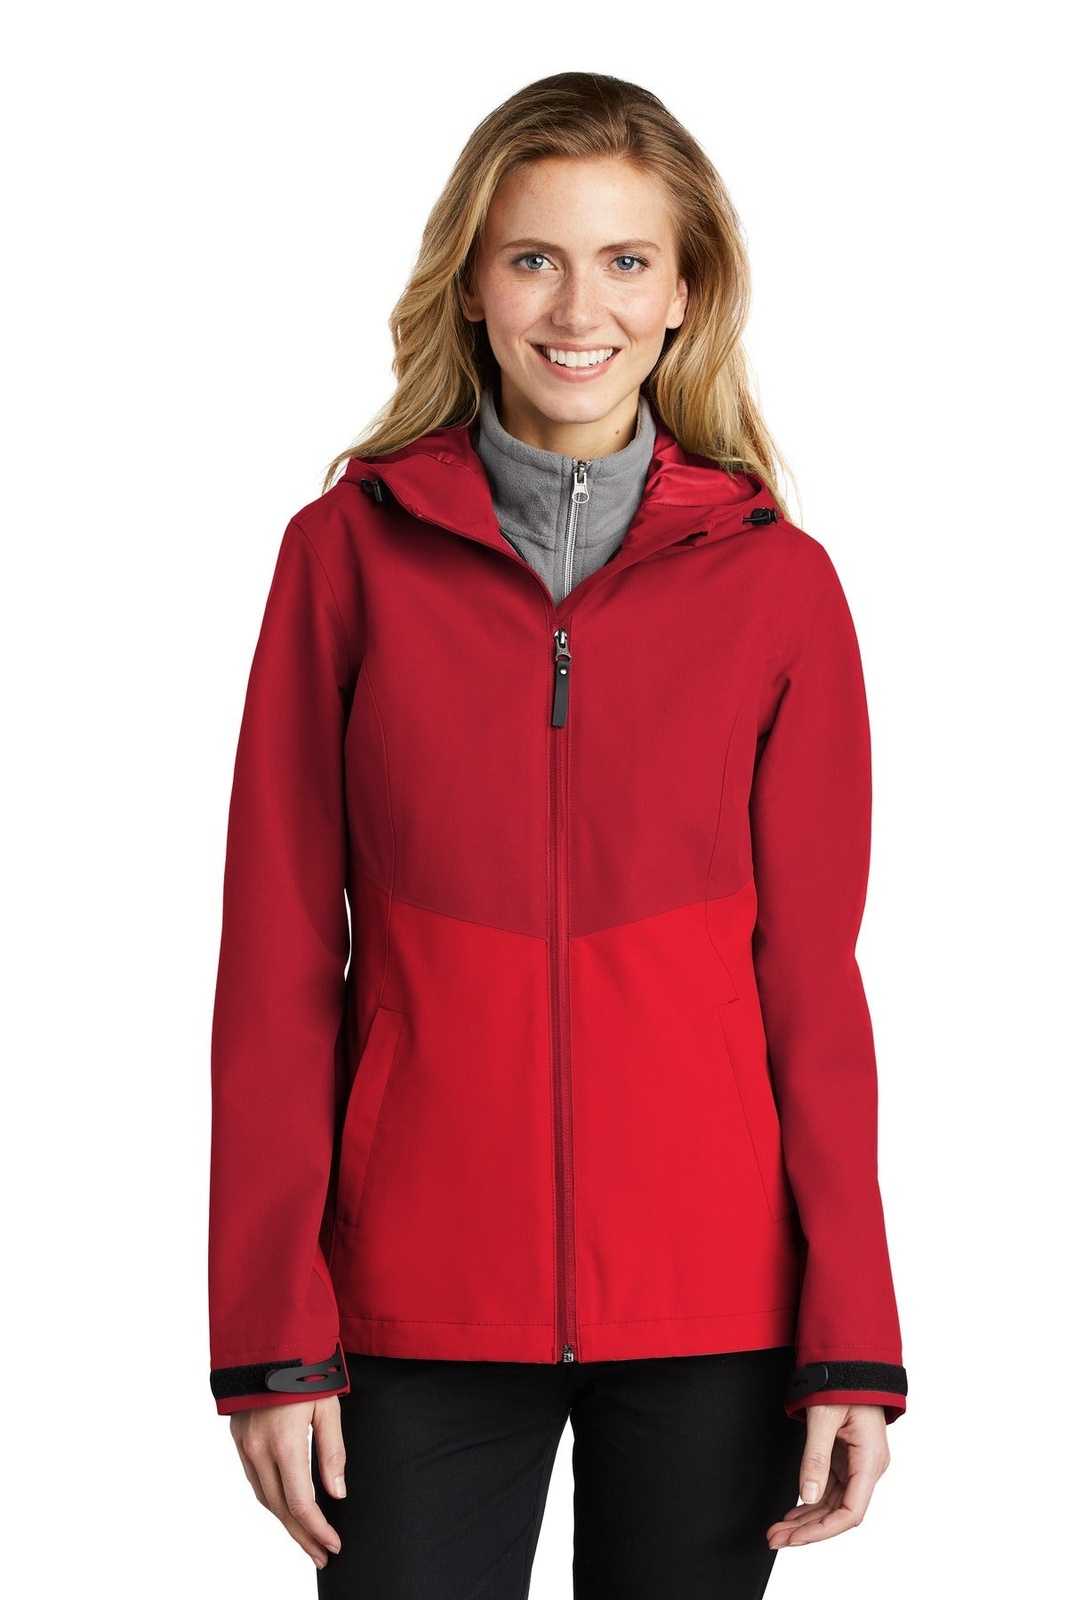 Port Authority L406 Ladies Tech Rain Jacket - Sangria True Red - HIT a Double - 1